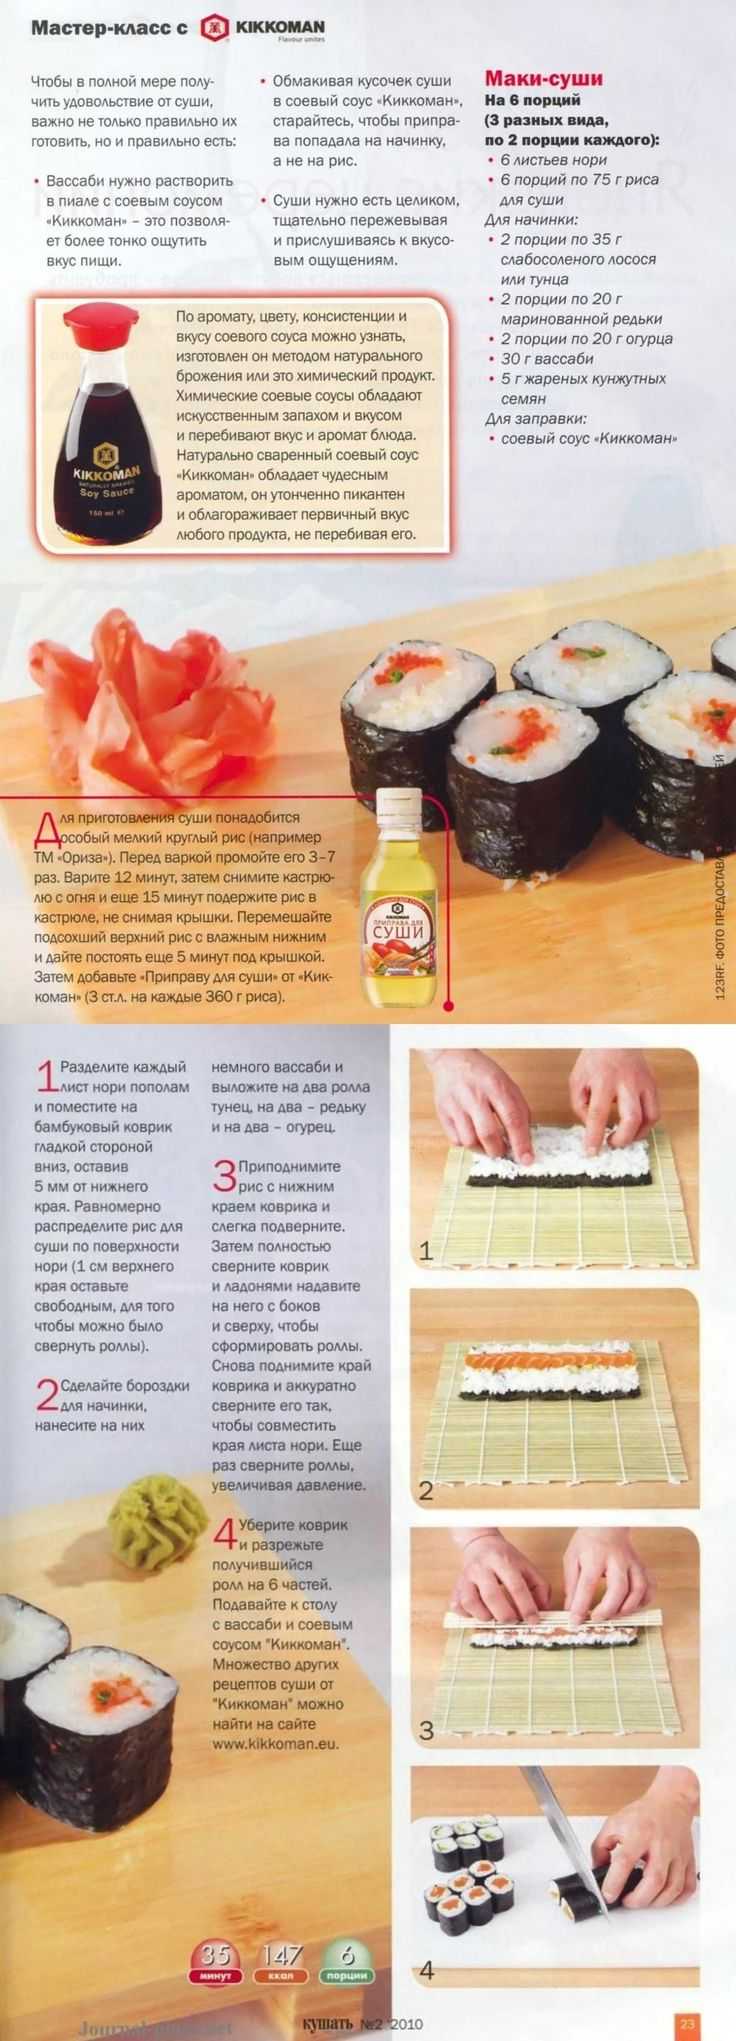 Как сделать вкусные суши самому фото 85